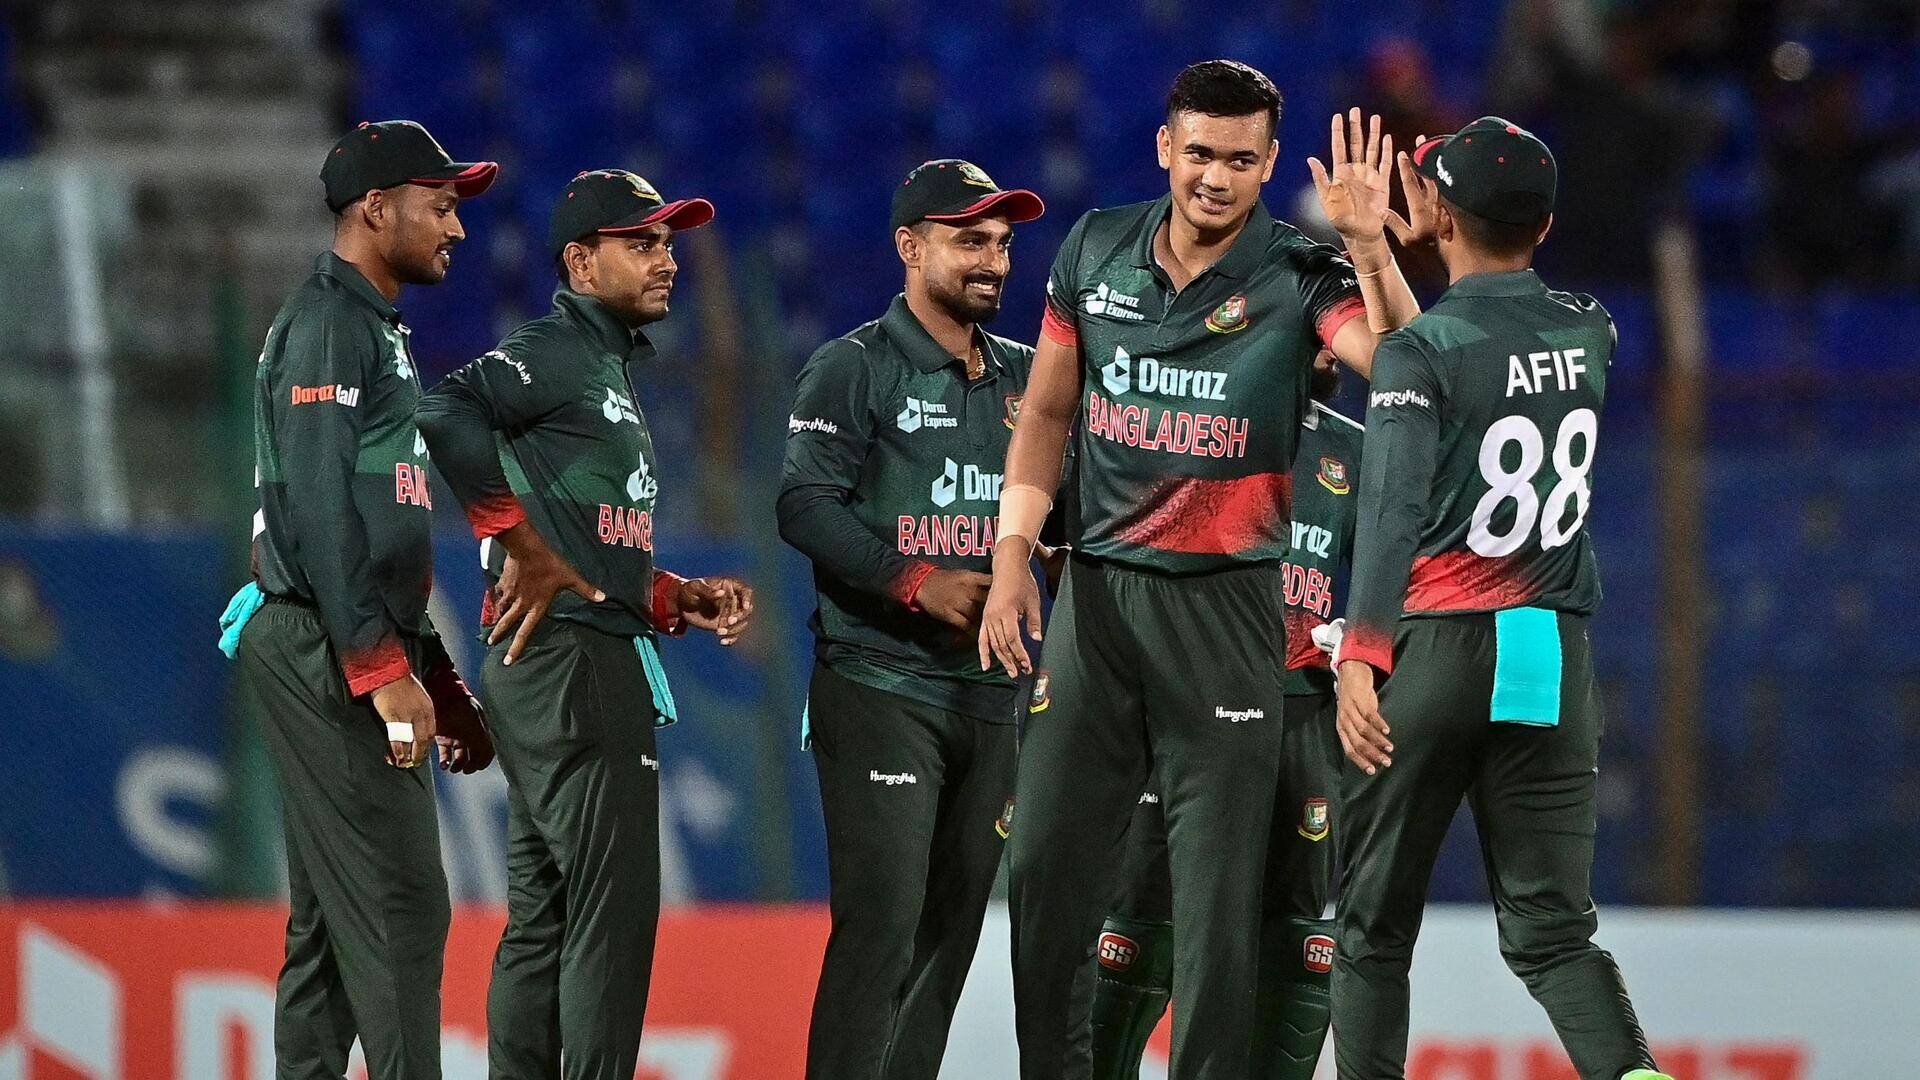 एशिया कप में बांग्लादेश क्रिकेट टीम के सफर पर एक नजर, जानिए रोचक आंकड़े 